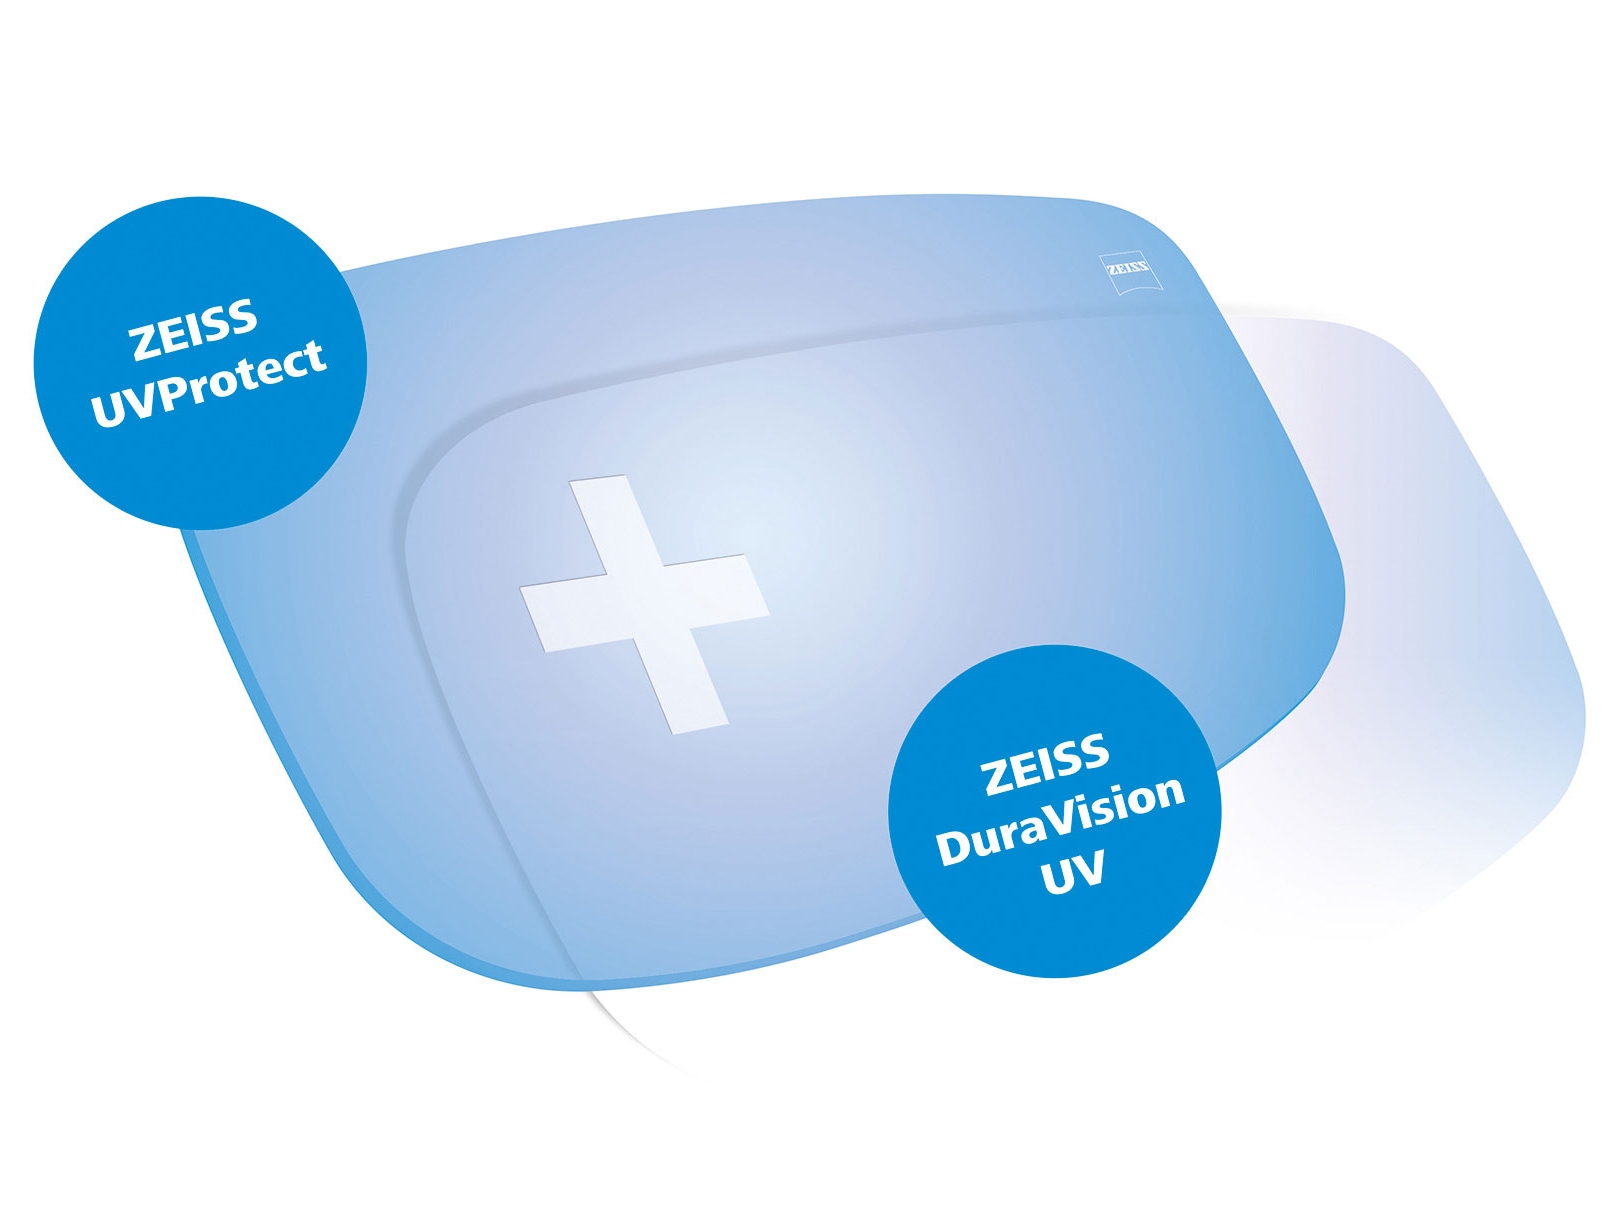 Alle ZEISS-glass leveres som standard med UV-beskyttelse fra alle kanter. Grafikken viser to løsninger.